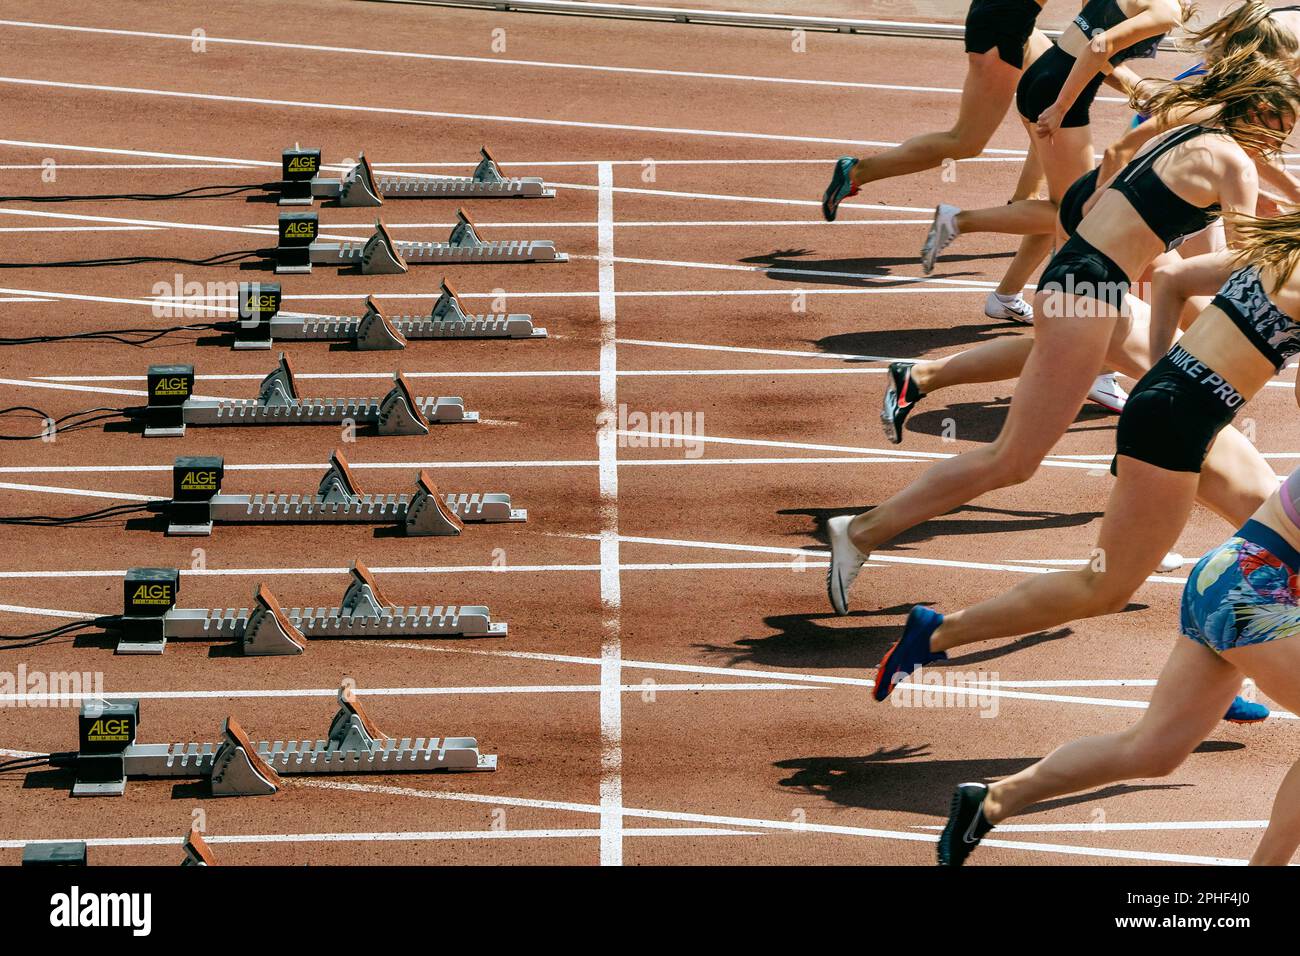 Le atlete di runner Nike Spikes iniziano la corsa partendo da blocchi di partenza Alge-Timing, competizione di atletica da campionato mondiale, editoriale sportivo Foto Stock